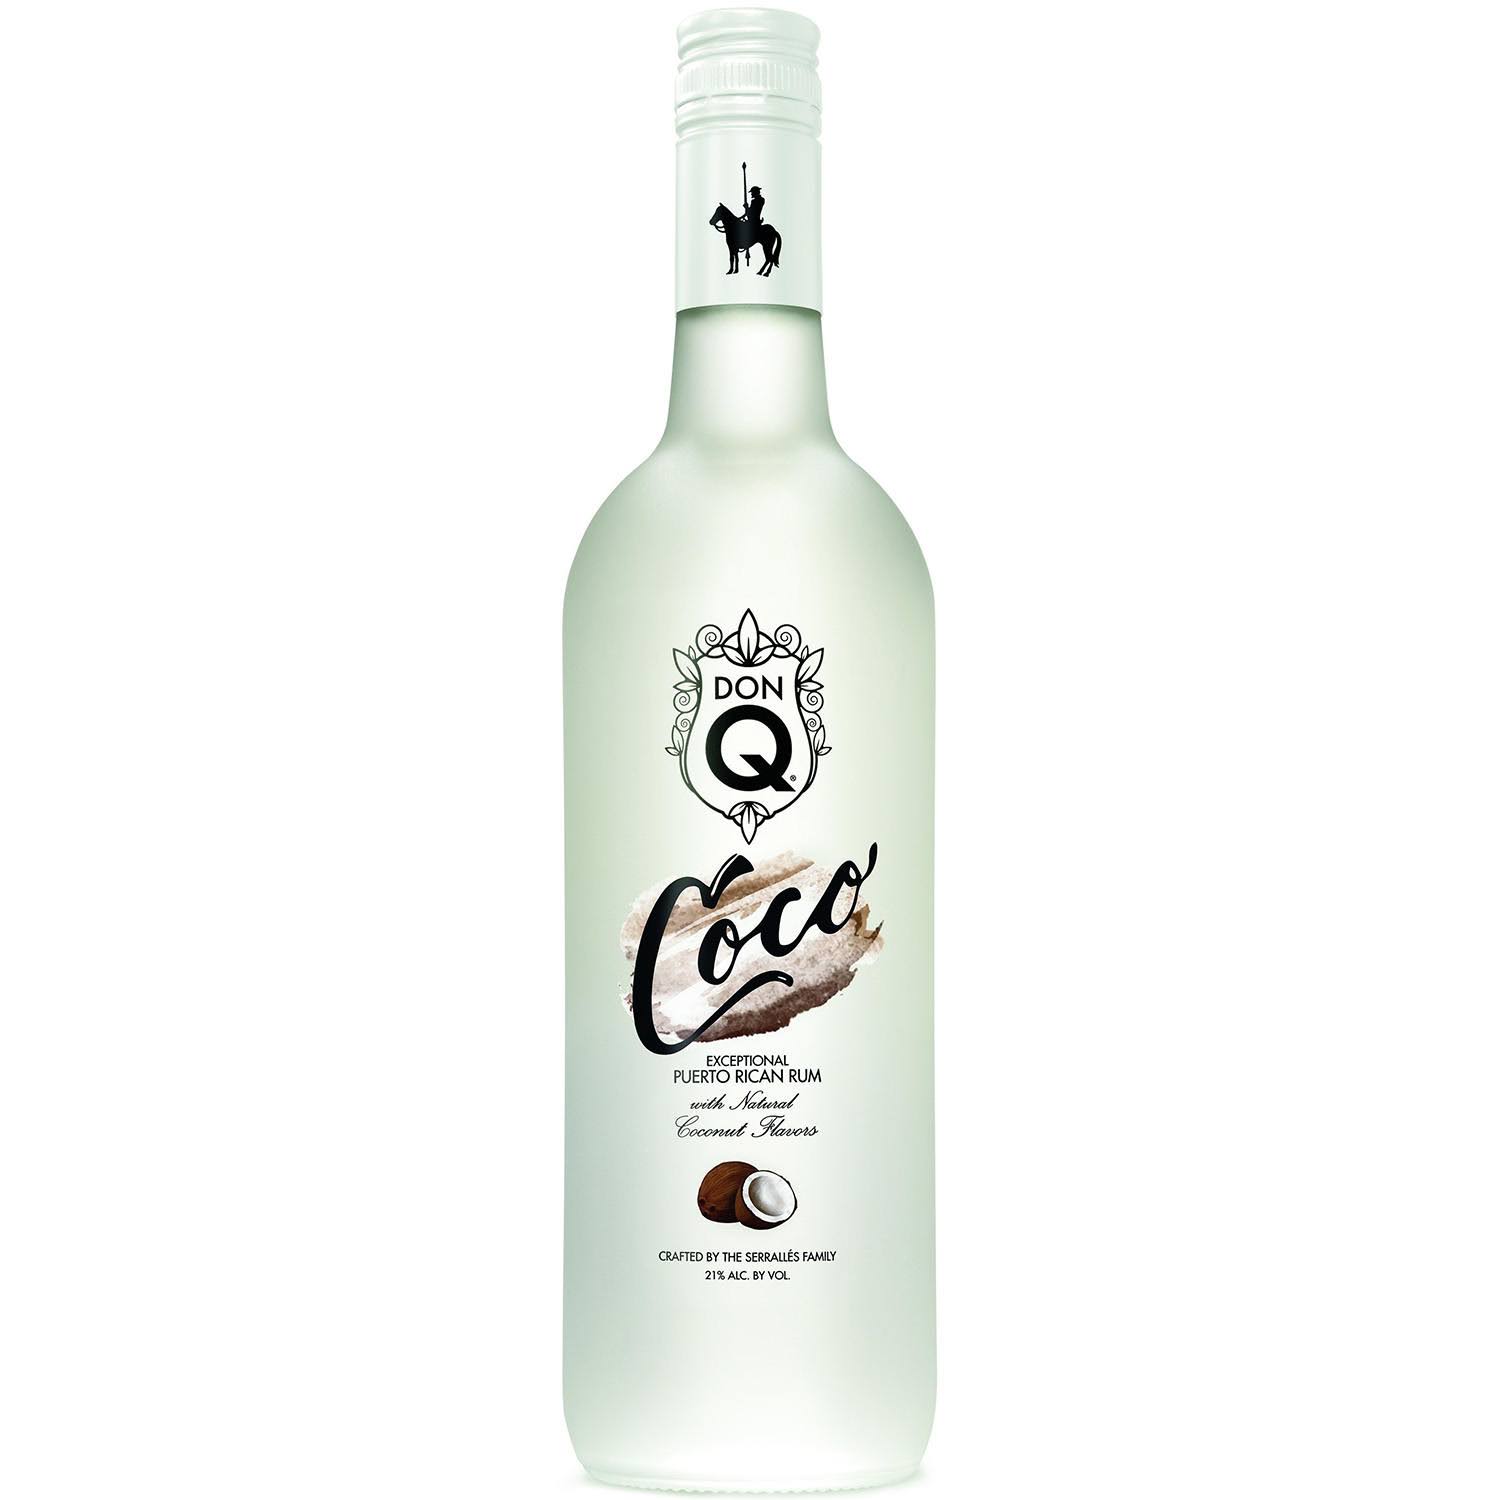 Don Q Coco Rum - 750 ml bottle